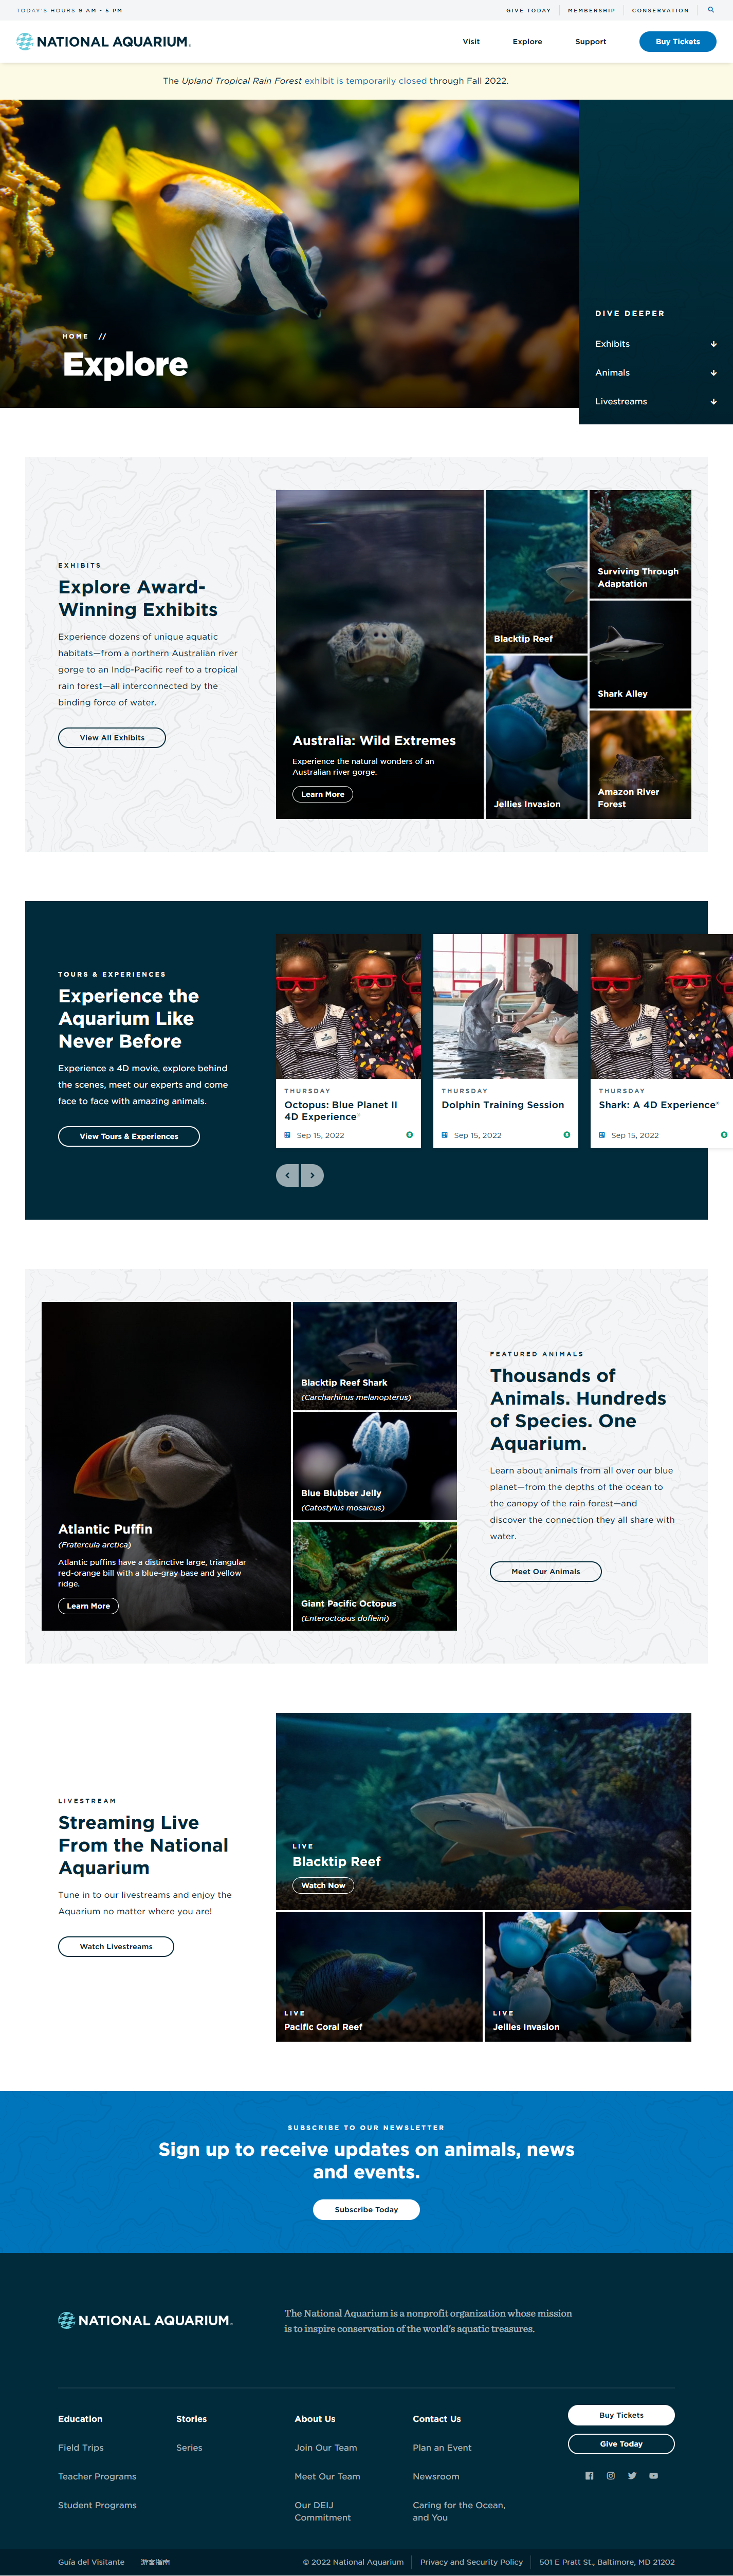 The National Aquarium Website image